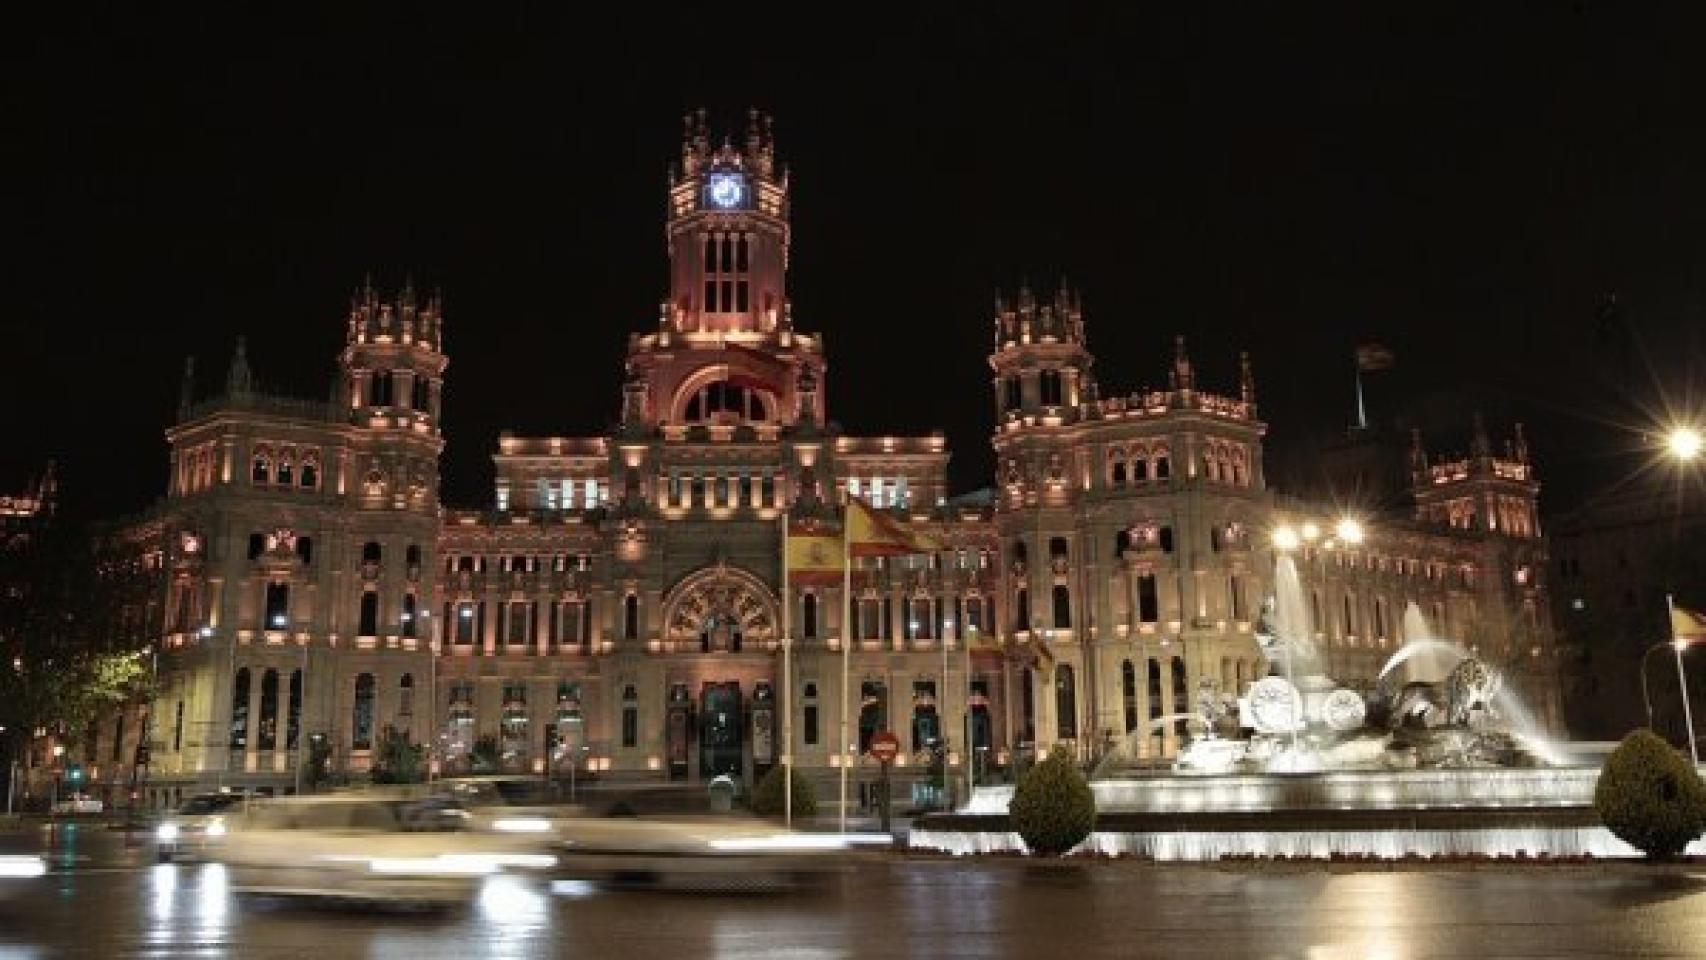 El Palacio de Cibeles, en Madrid, iluminado de noche.